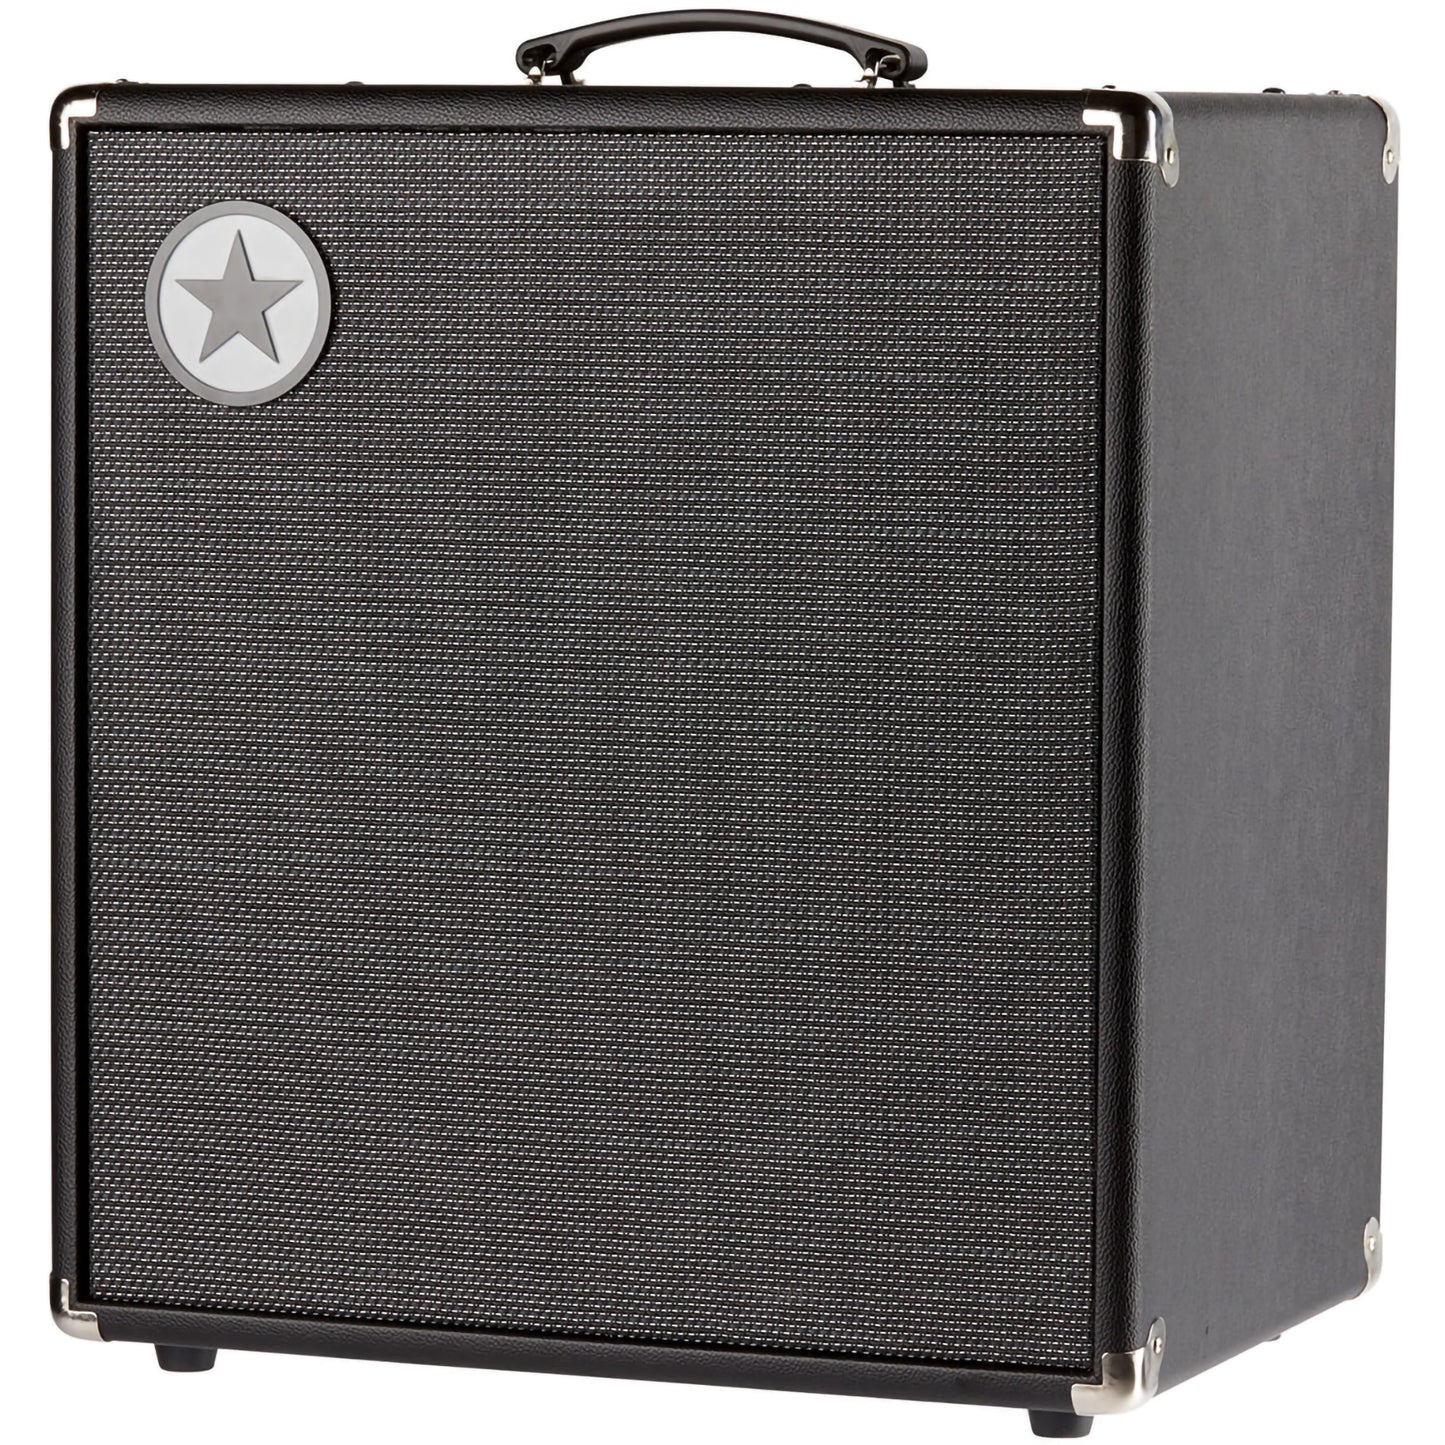 Blackstar Unity Bass 250 1x15” 250-Watt Bass Combo Amplifier